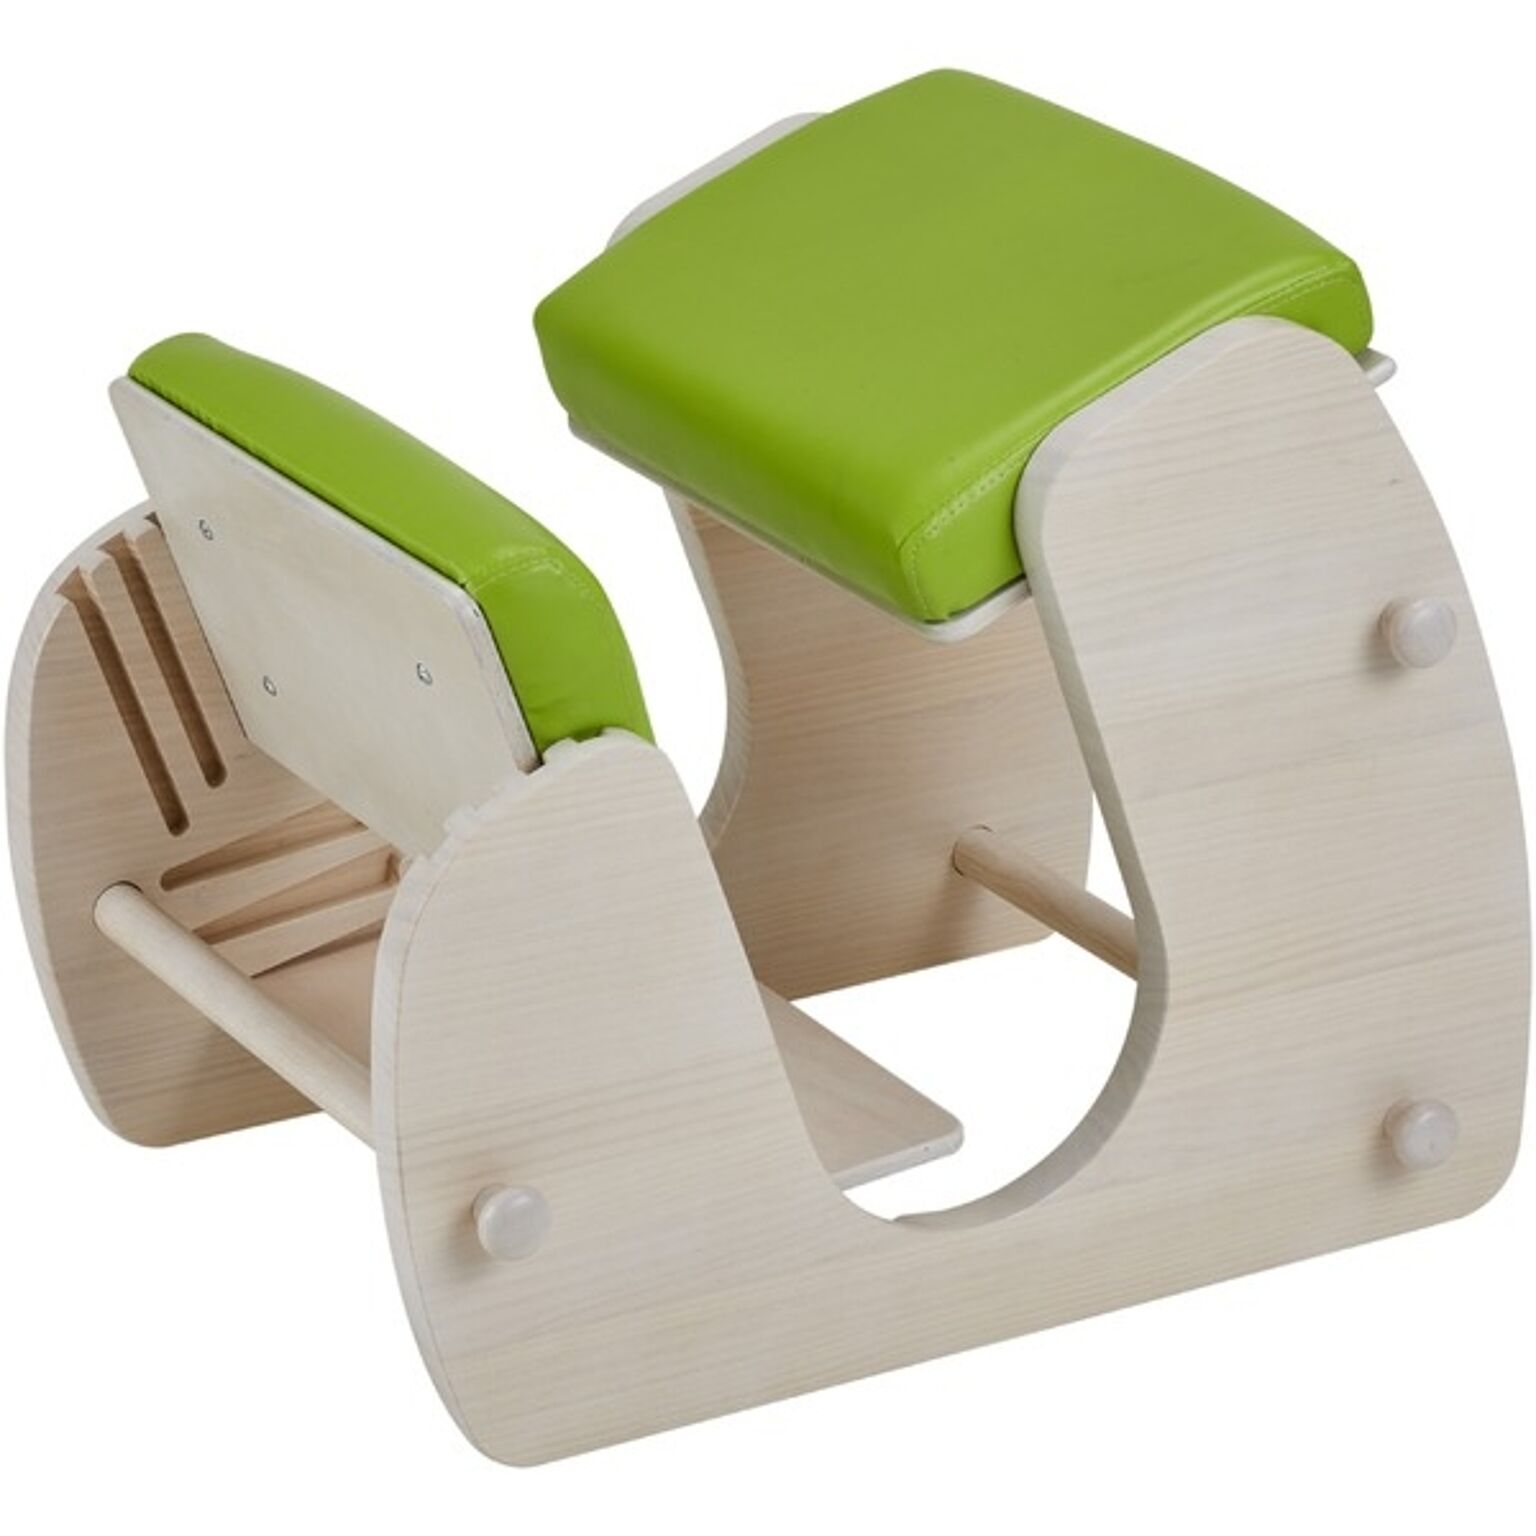 デスクチェア 学習椅子 幅51.5cm ホワイト×グリーンアップル 木製 合皮 Keepy プロポーションチェア 組立品 猫背 姿勢【代引不可】